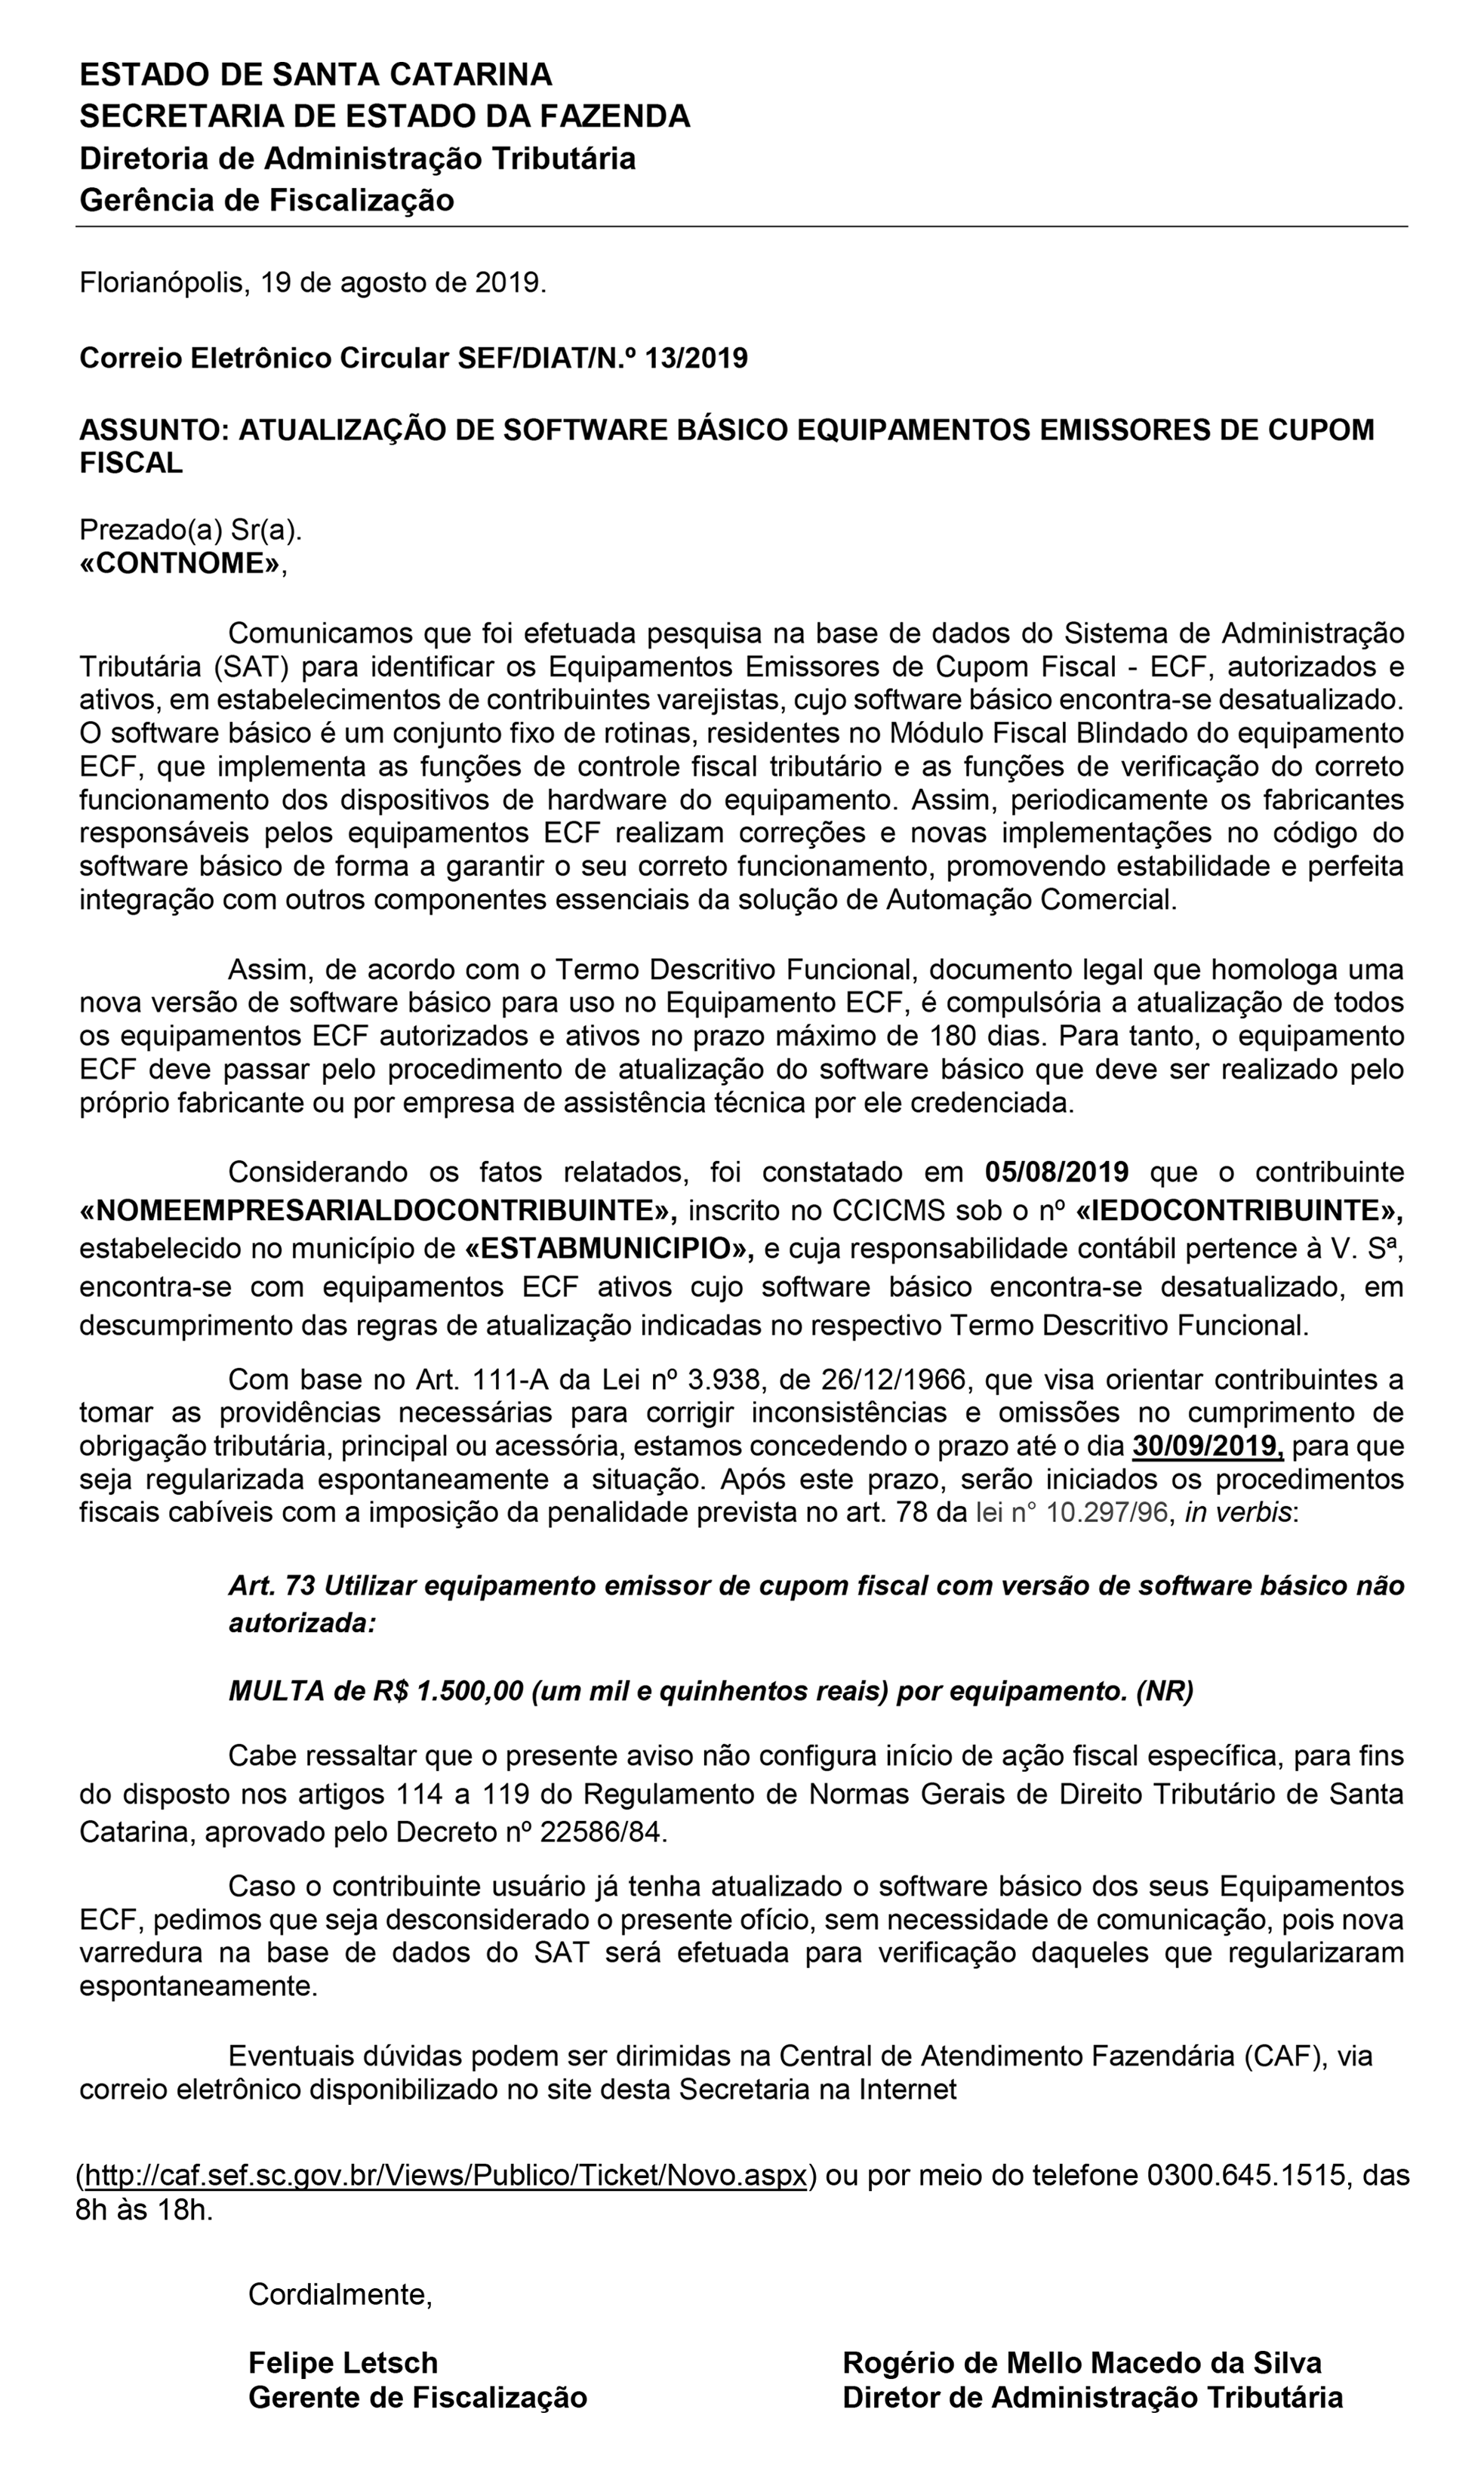 ATUALIZAÇÃO-DE-SOFTWARE-BÁSICO-EQUIPAMENTOS-EMISSORES-DE-CUPOM(2)-1-1_02